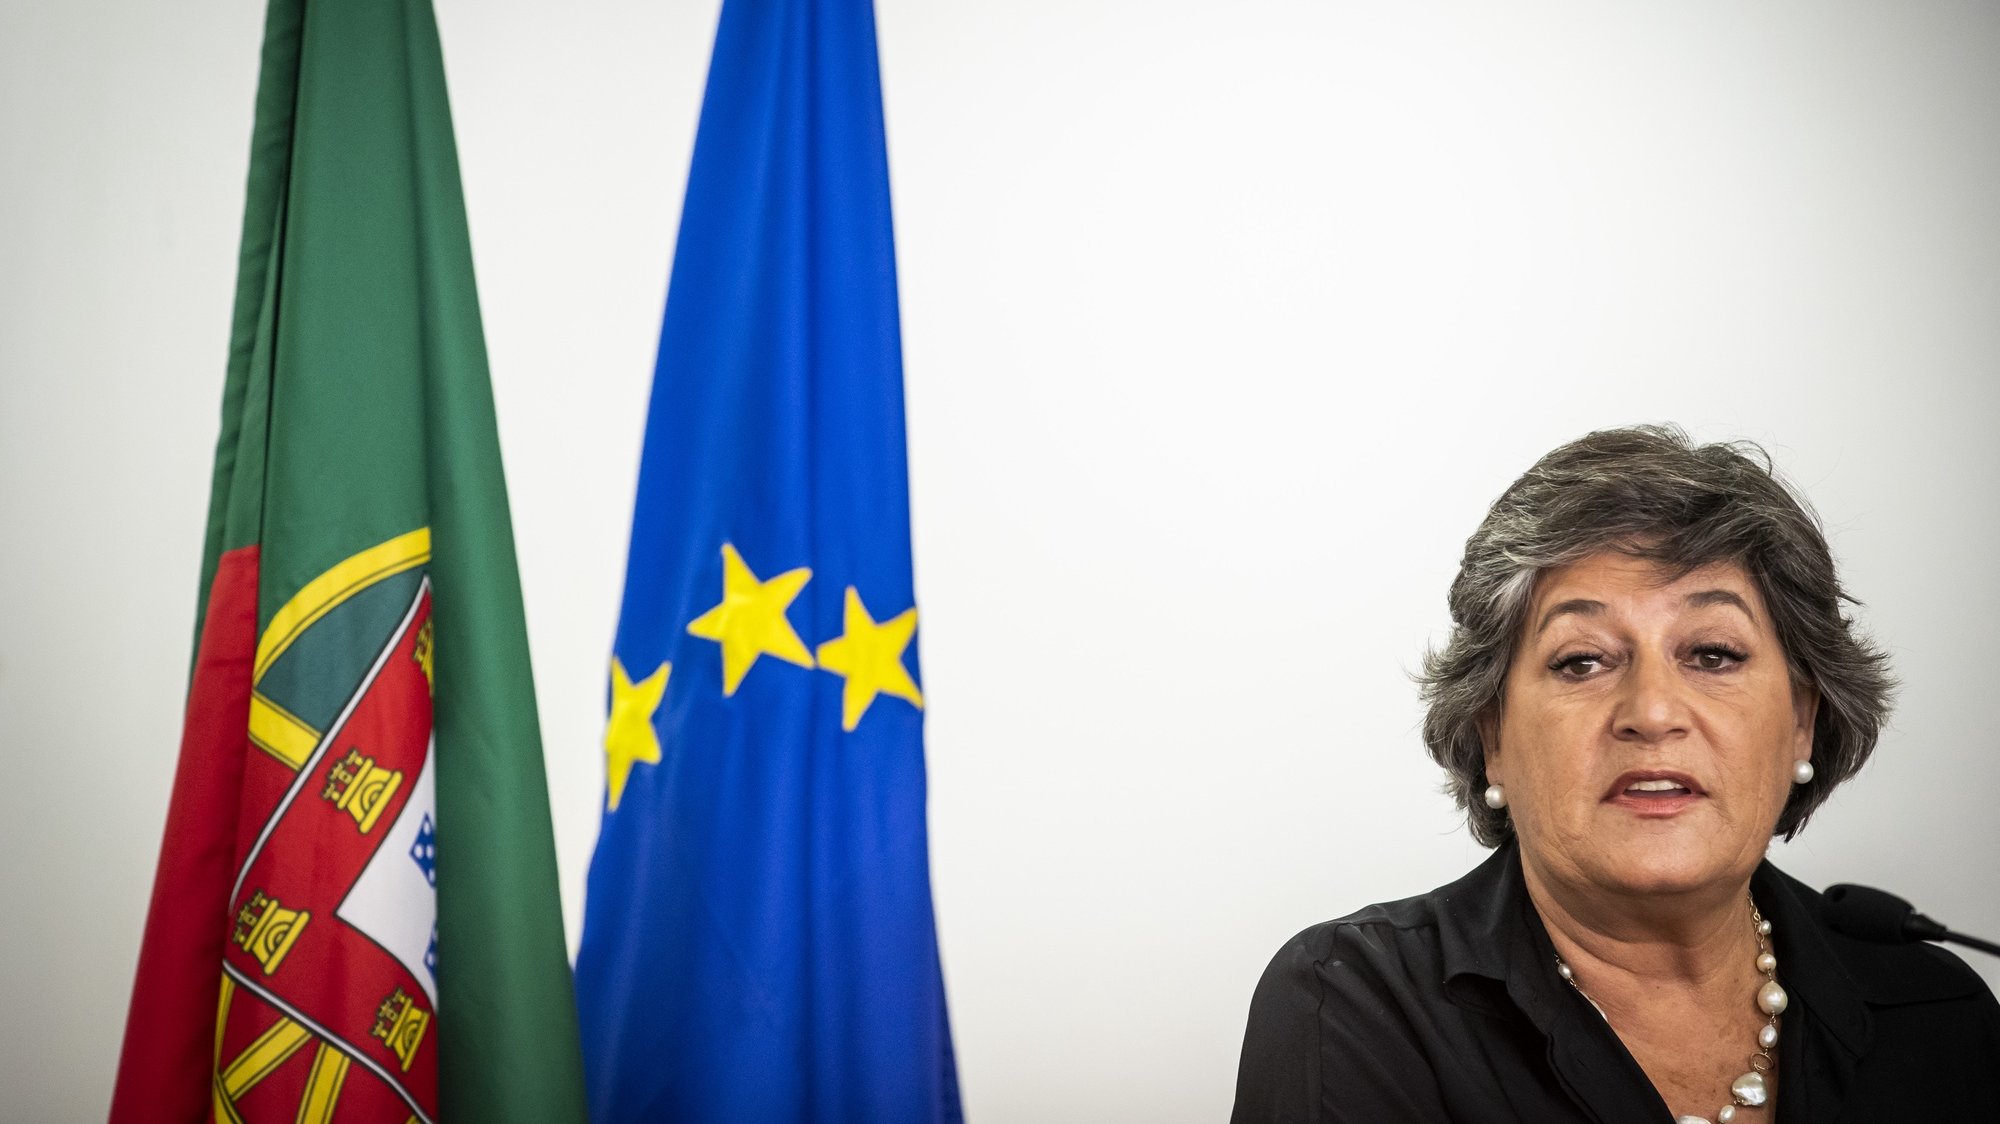 A ex-eurodeputada socialista, Ana Gomes, durante o anúncio da sua candidatura à Presidência da República, na Casa da Imprensa, em Lisboa,10 de setembro de 2020. JOSÉ SENA GOULÃO/LUSA